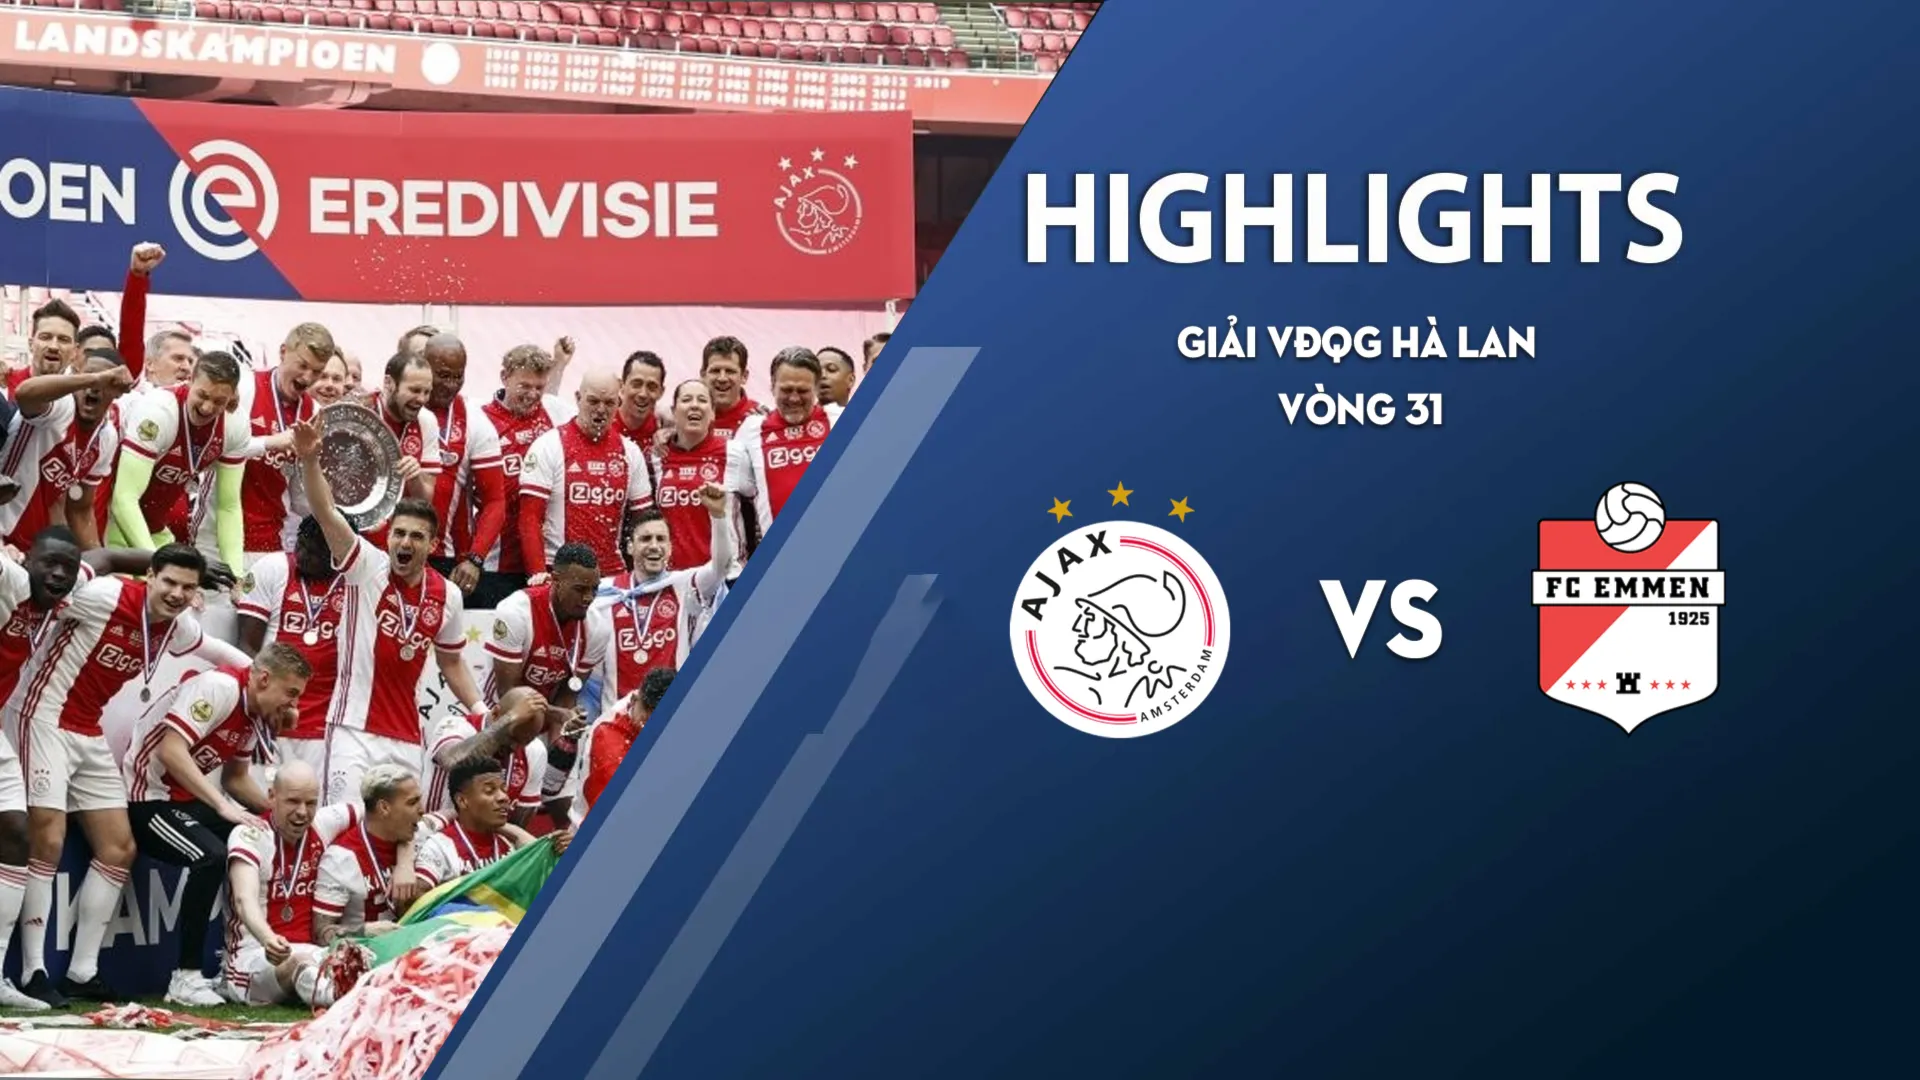 Highlights Ajax - FC Emmen (vòng 31 giải VĐQG Hà Lan 2020/21)